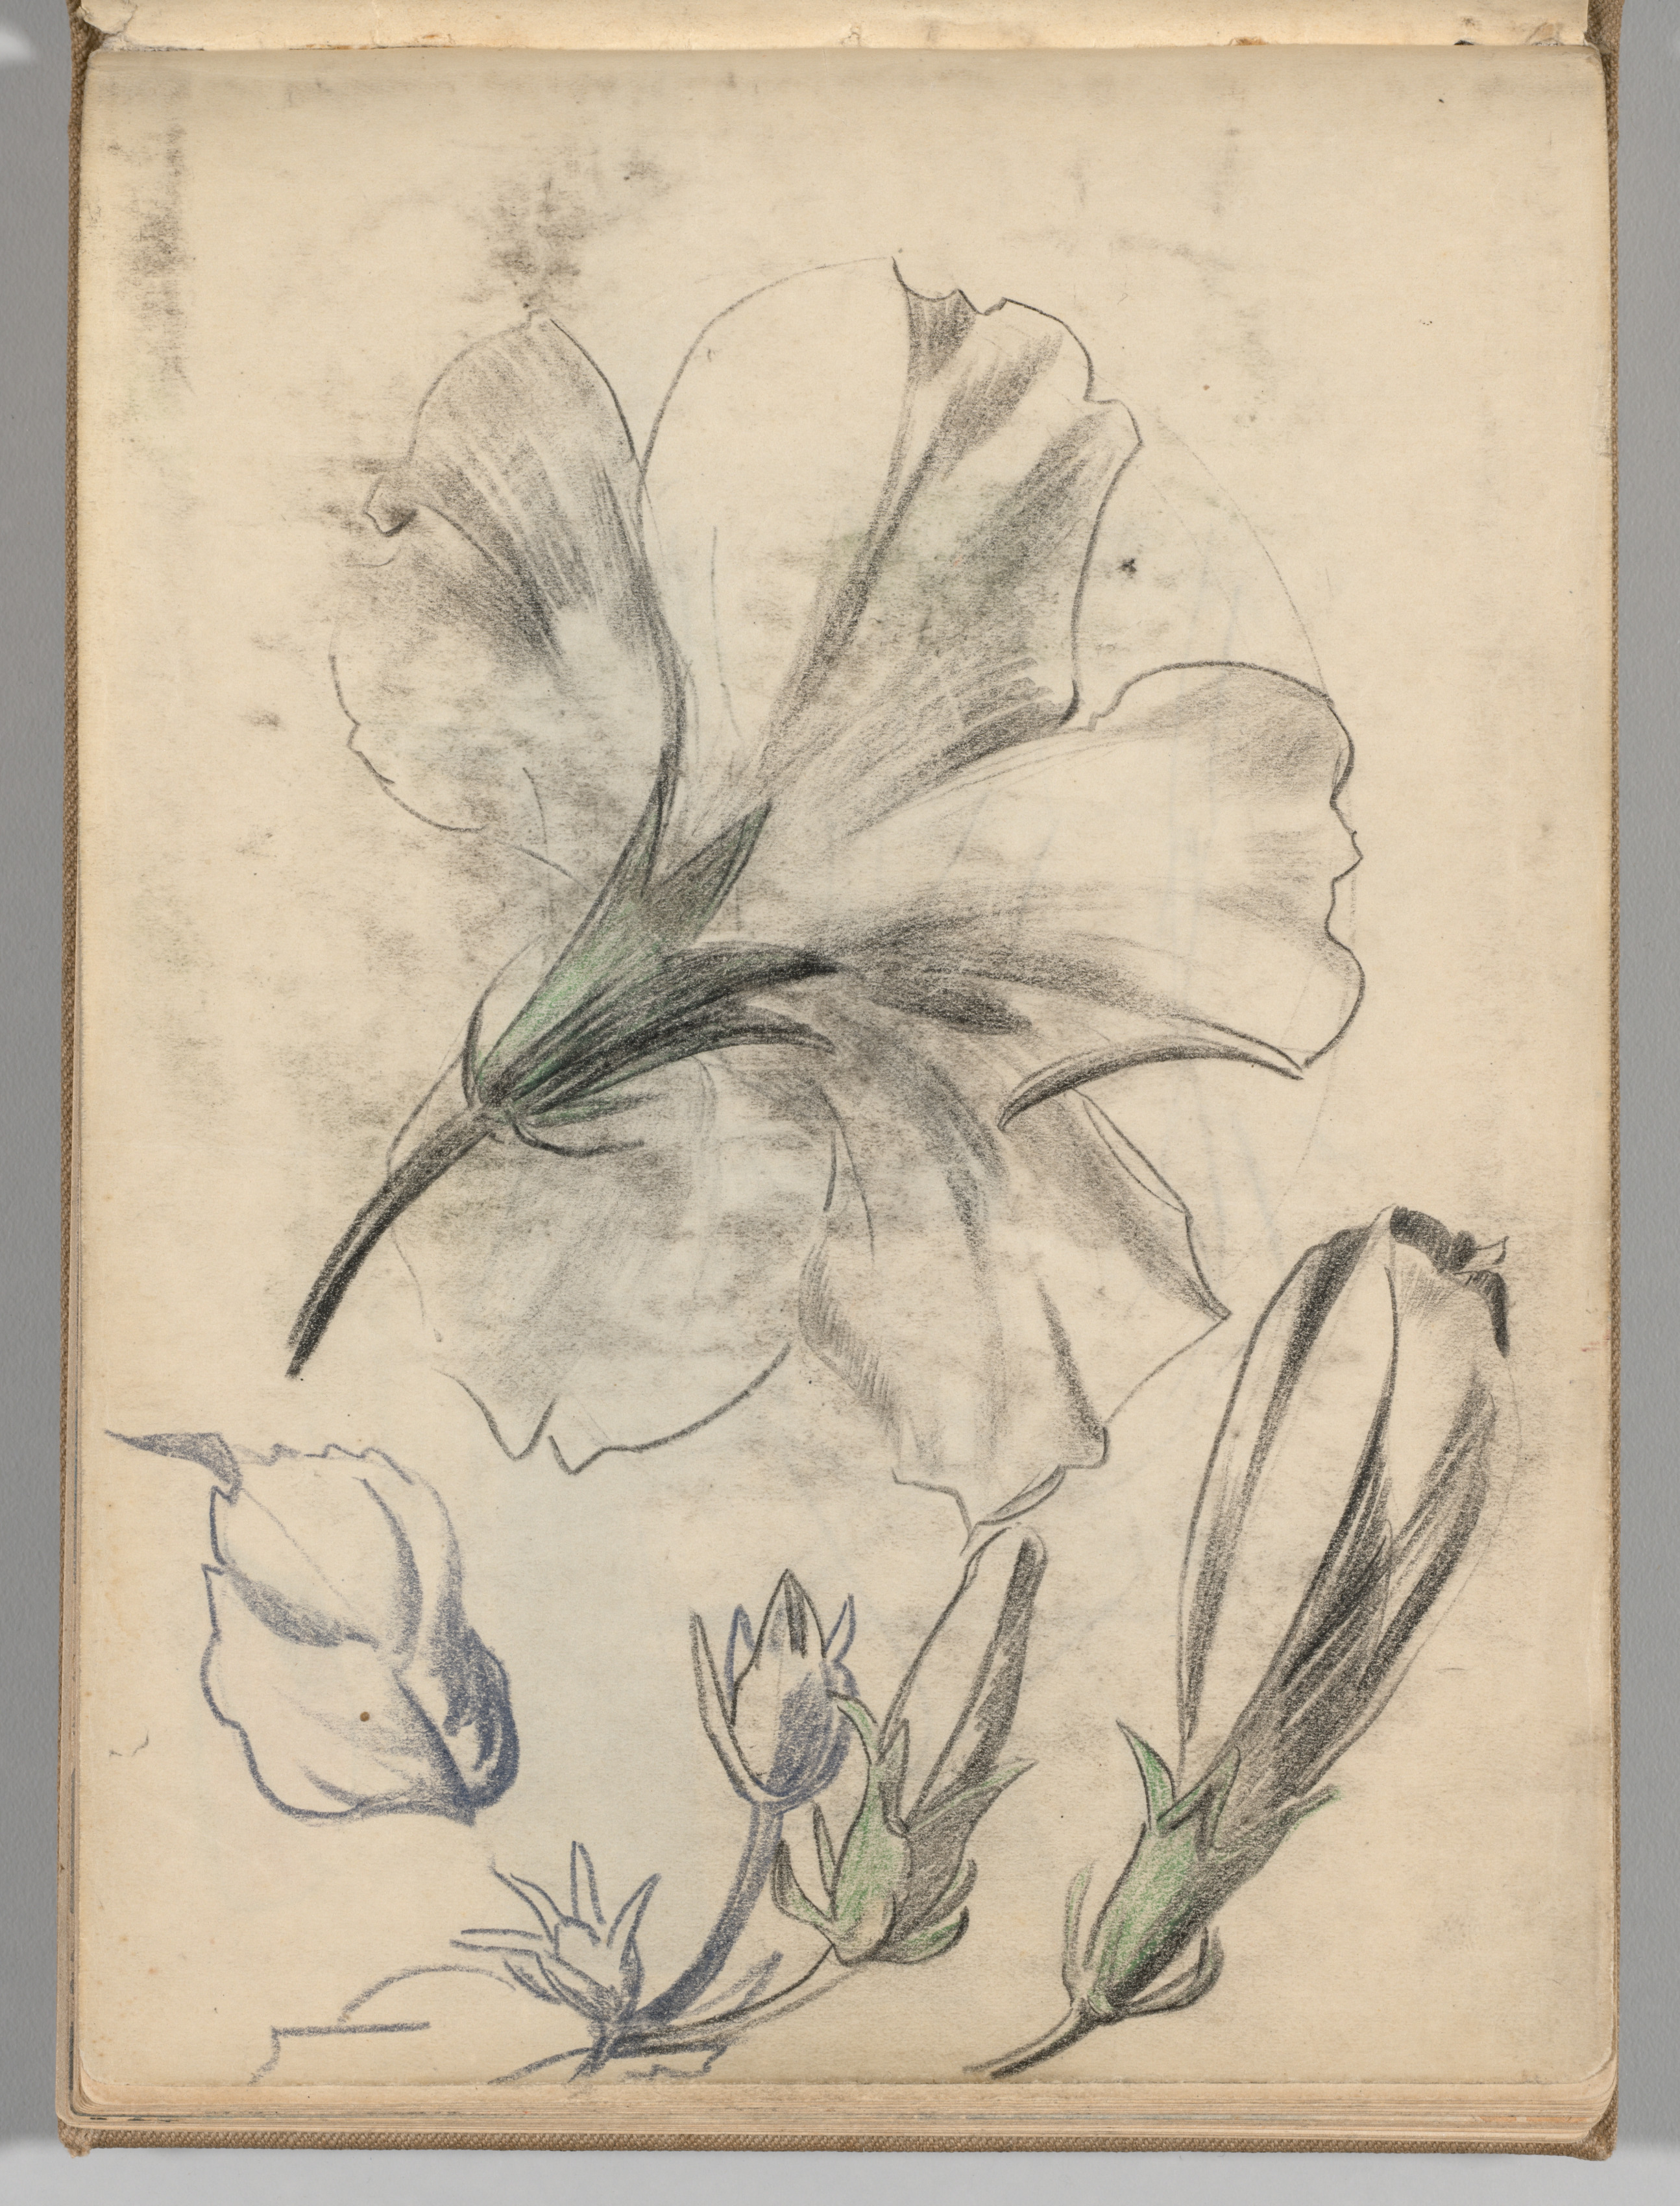 Sketchbook, Spain: Page 84, Studies of Flowers